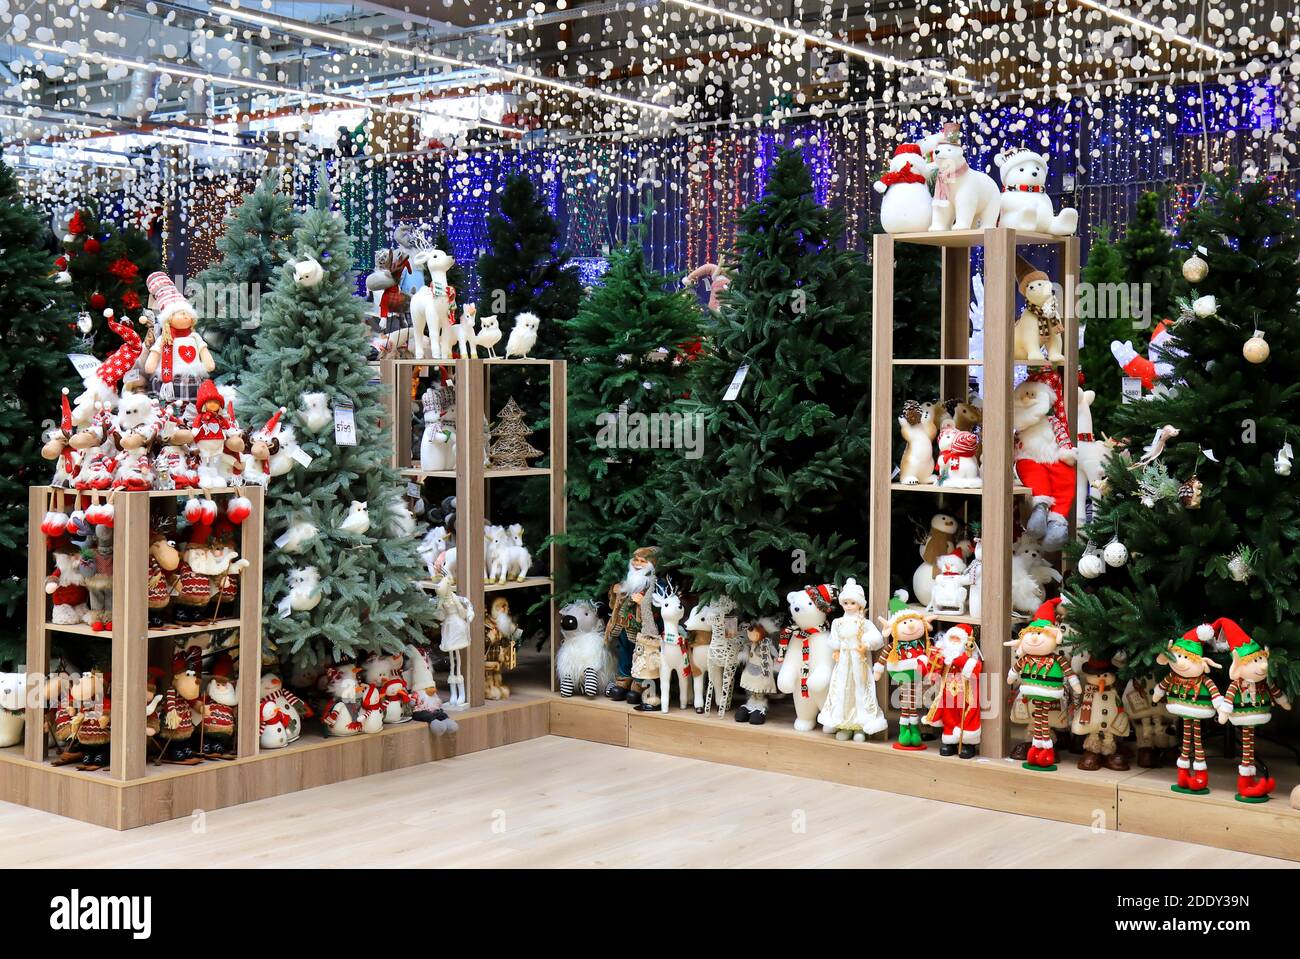 Schöne Weihnachten und Neujahr Baum, Spielzeug, Dekorationen im Spielzeugladen. Lustige Weihnachtsmann, Schneemänner, Puppen im Supermarkt. Festliche Weihnachten Wintermarkt Stockfoto